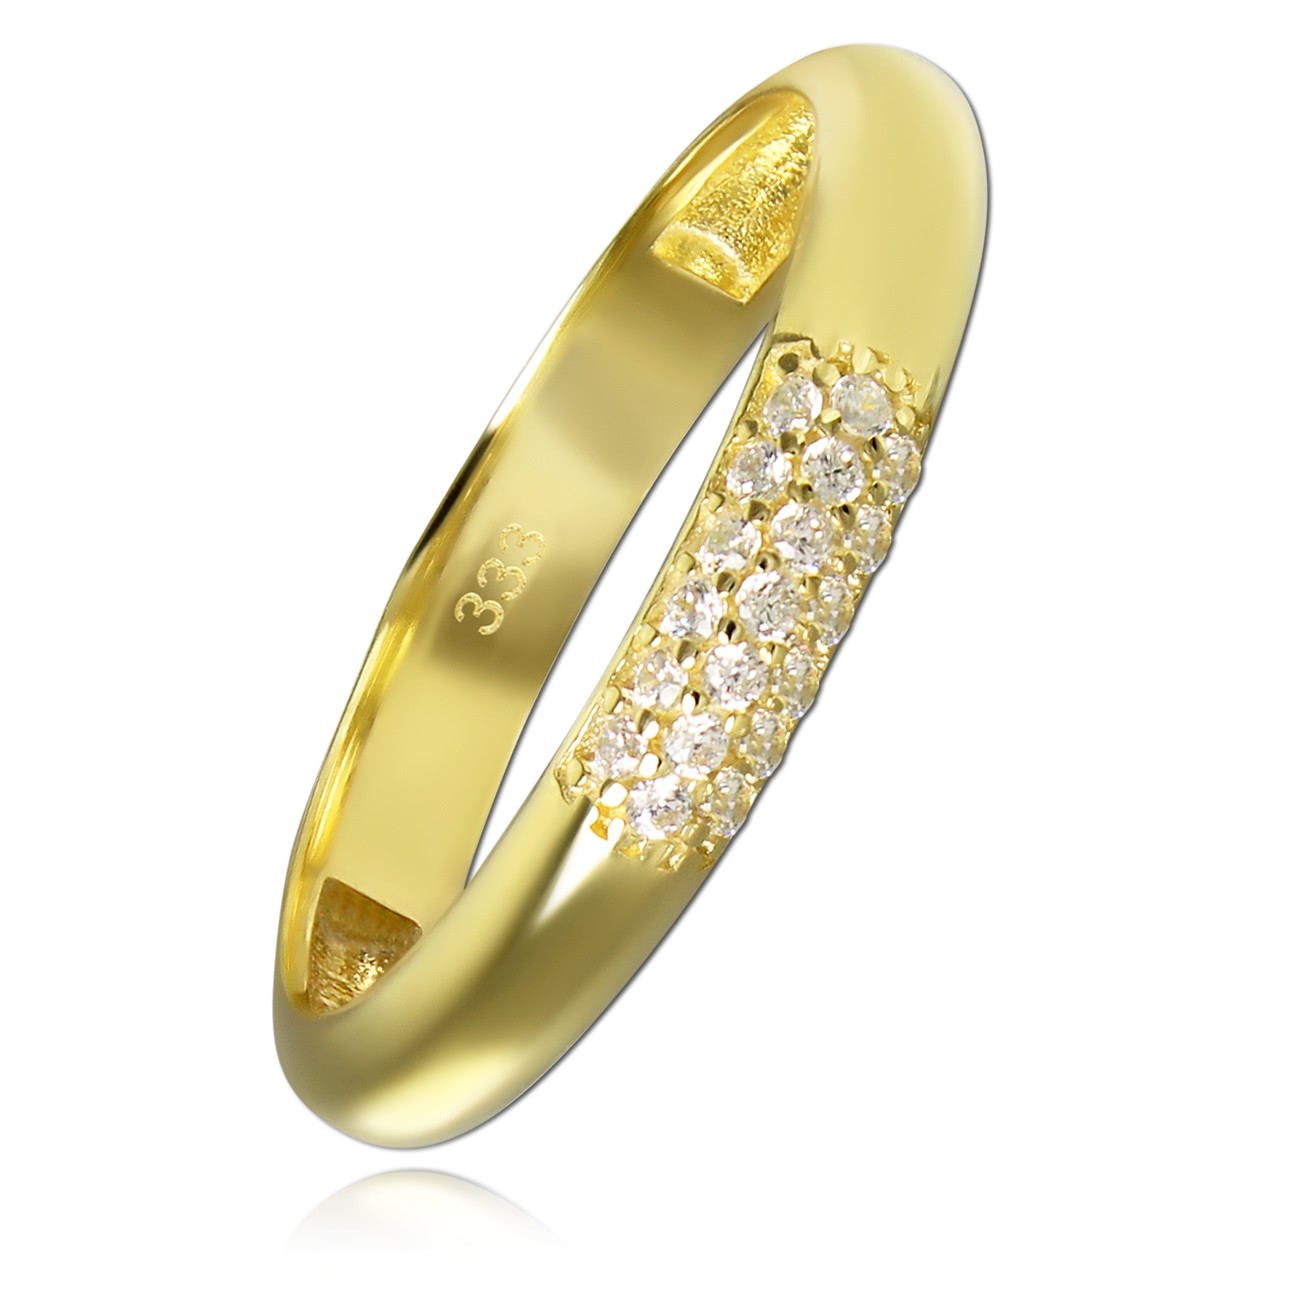 Balia Damen Ring aus 333 Gelbgold 3-reihig mit Zirkonia Gr.56 BGR064G56